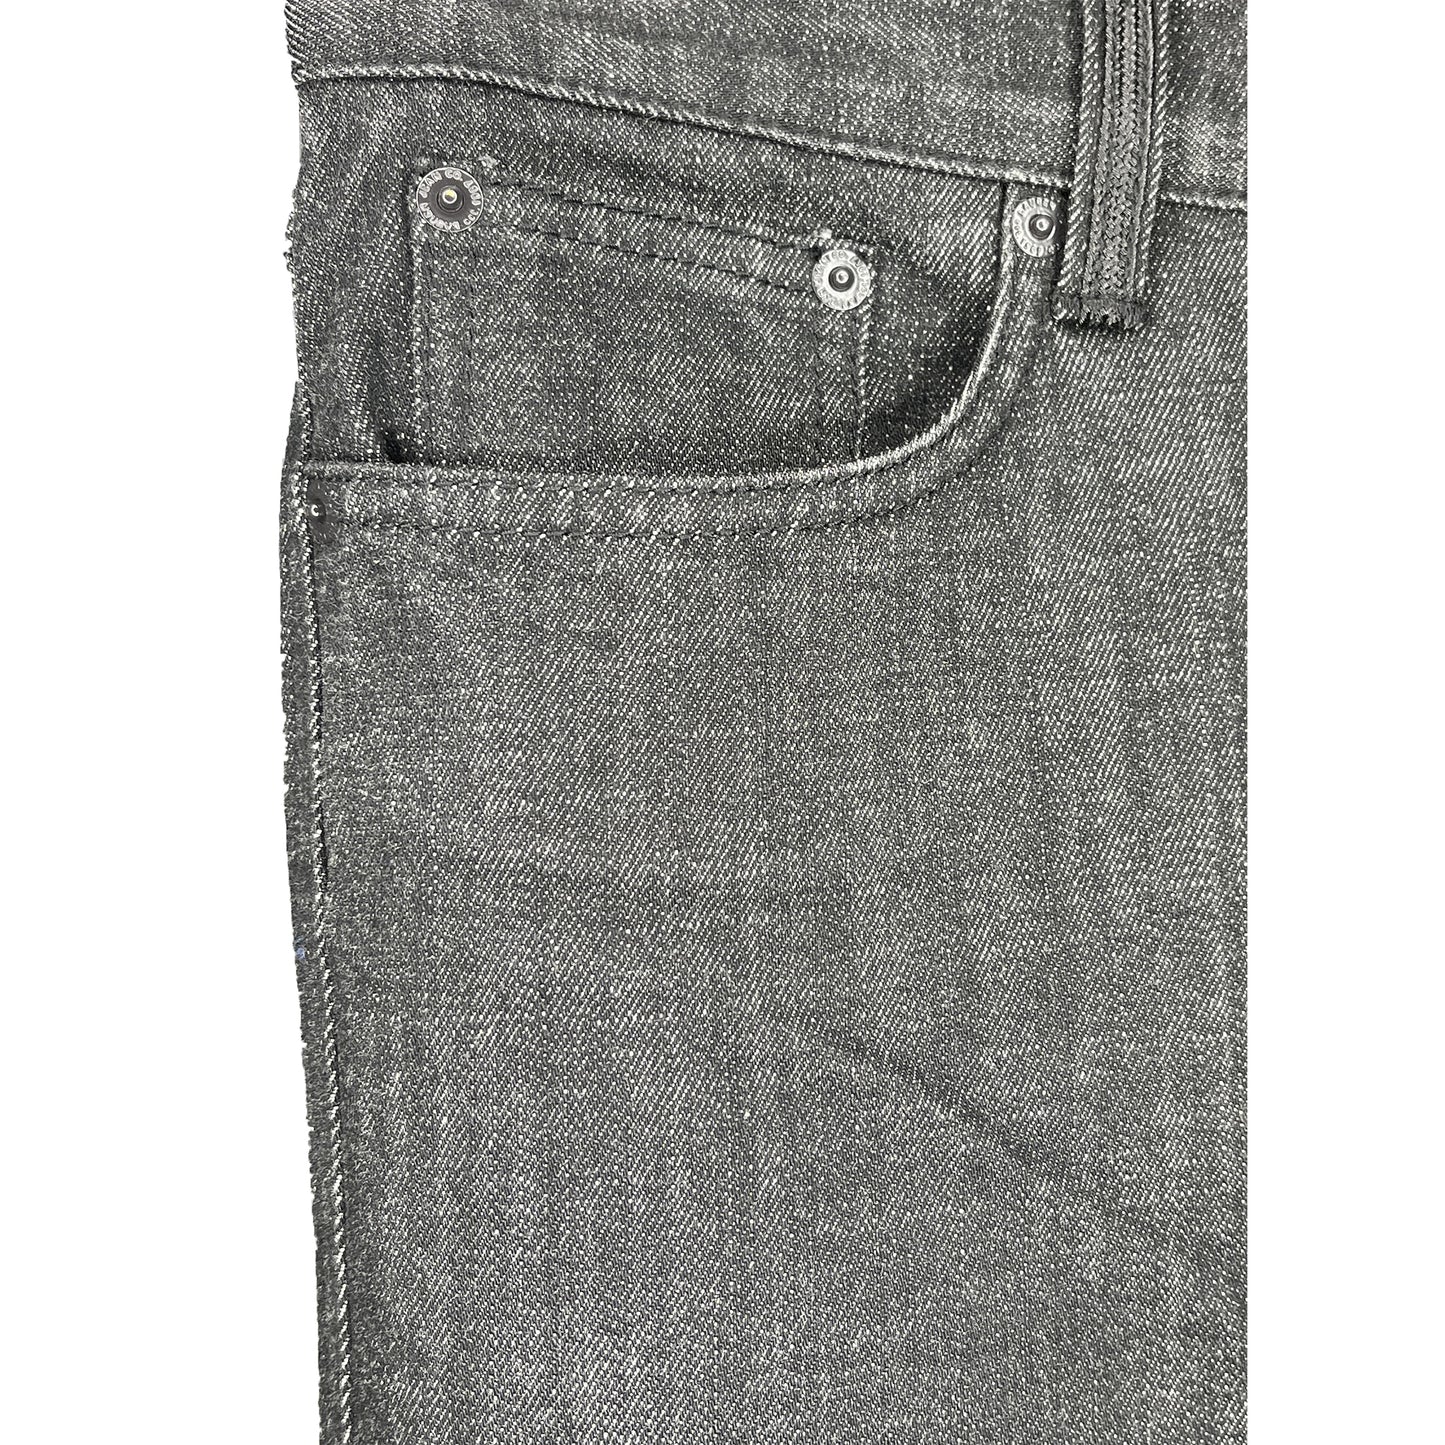 Ralph Lauren Denim Jeans Embellished Black Size 8 SKU 000424-3